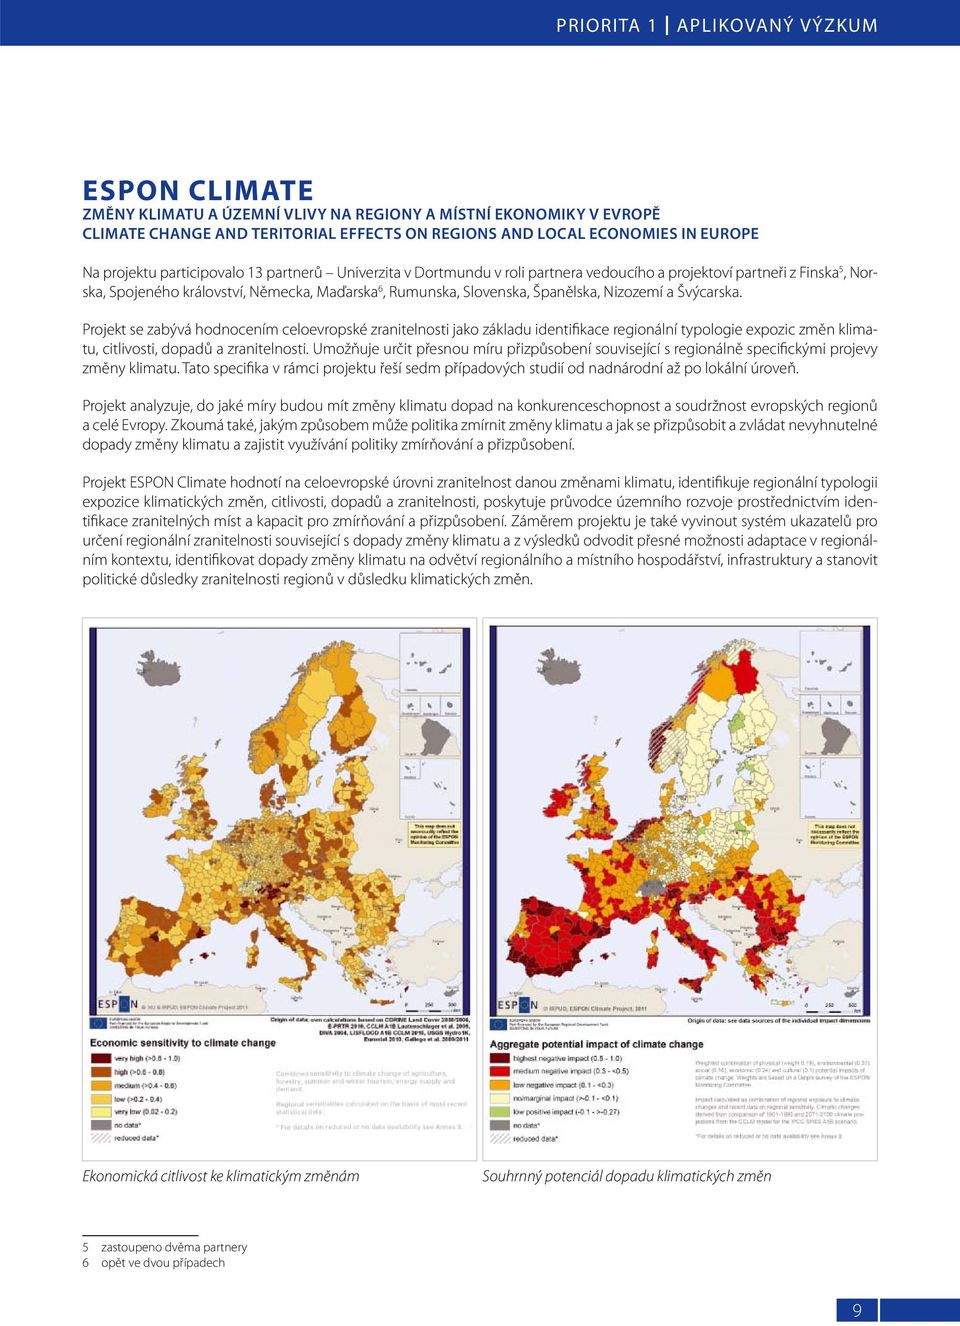 Španělska, Nizozemí a Švýcarska. Projekt se zabývá hodnocením celoevropské zranitelnosti jako základu identifikace regionální typologie expozic změn klimatu, citlivosti, dopadů a zranitelnosti.